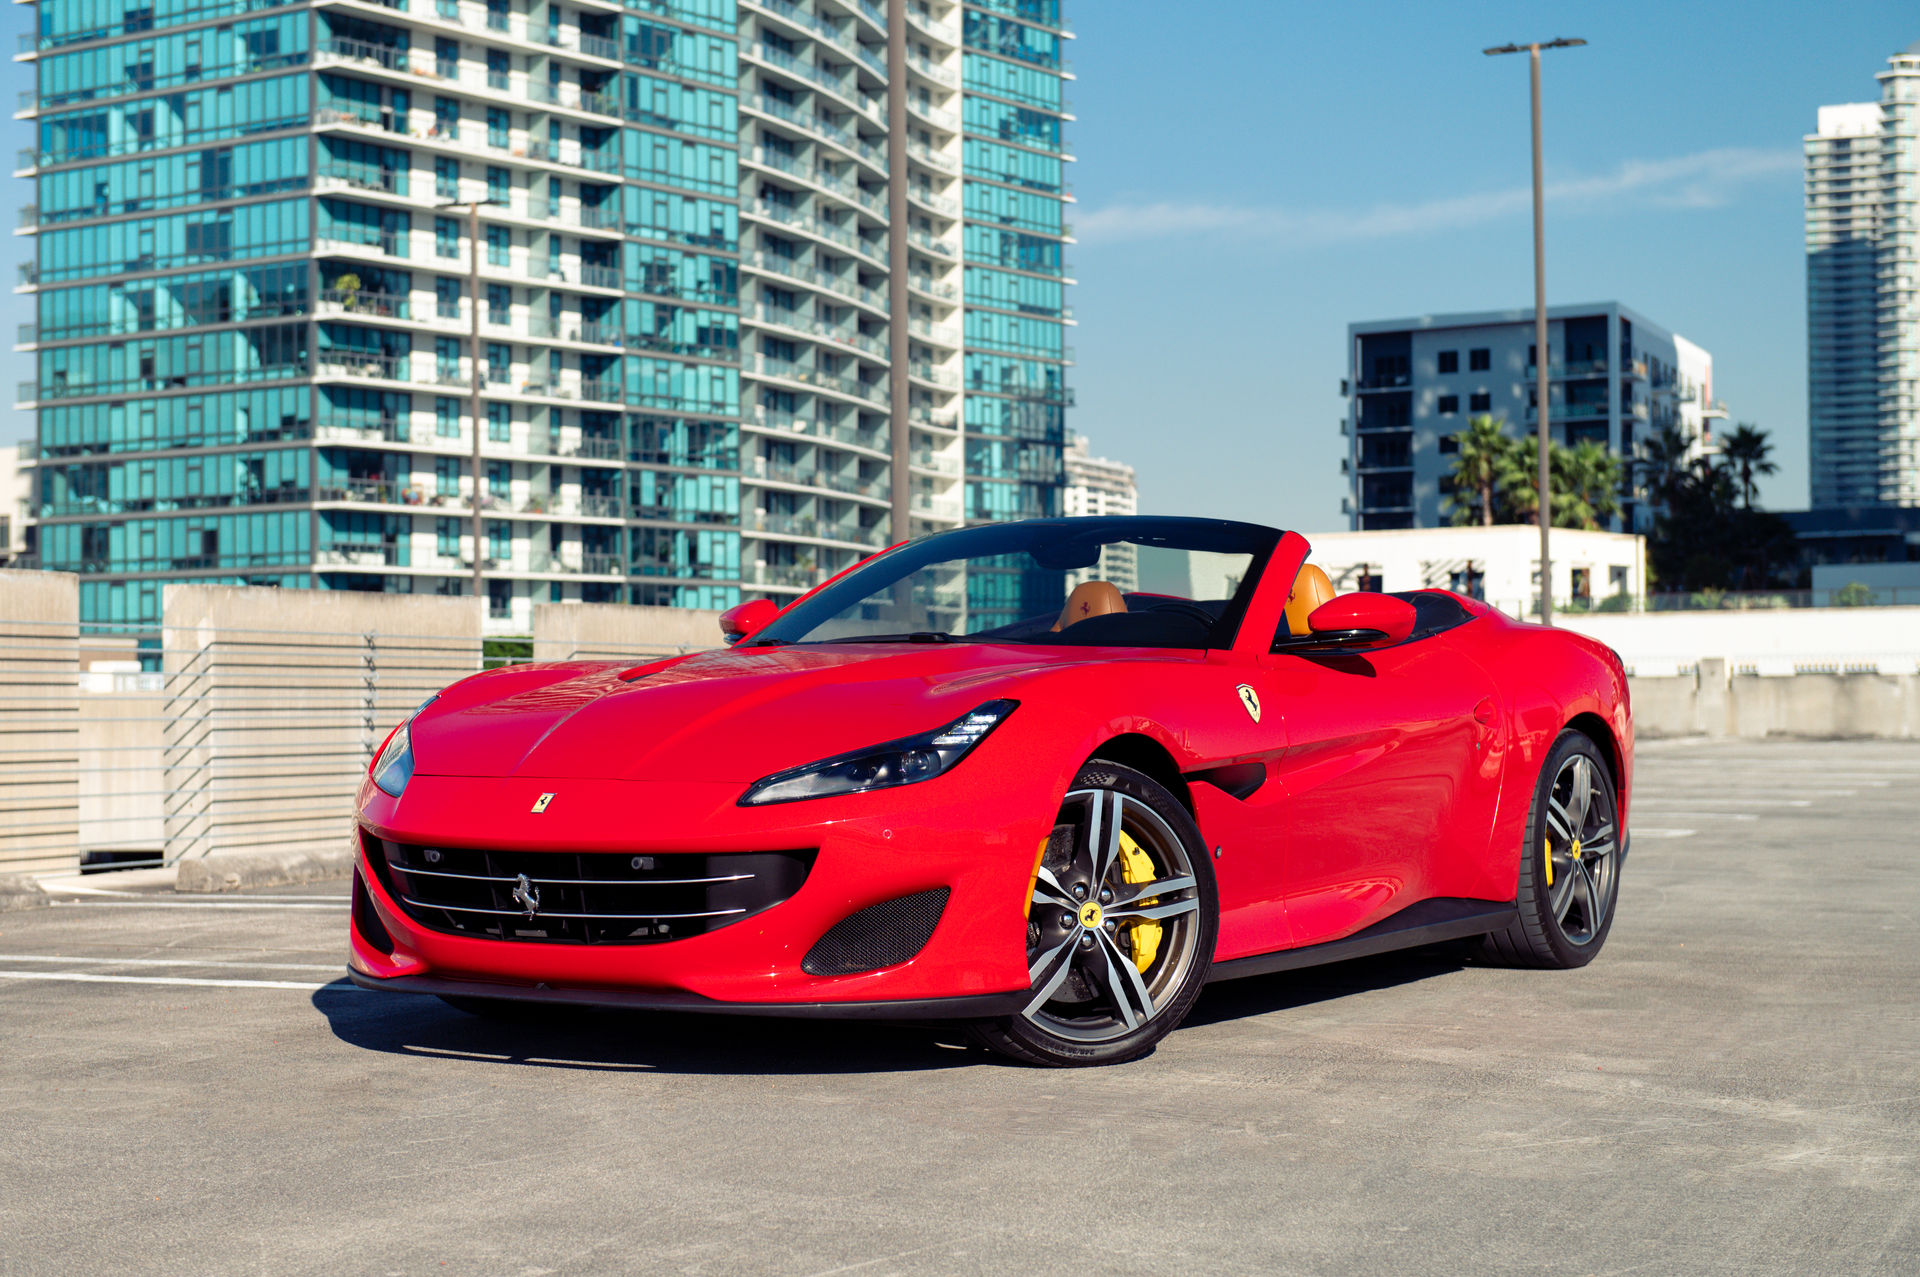 Ferrari Portofino - Supercar Driving Experience in Miami image 1